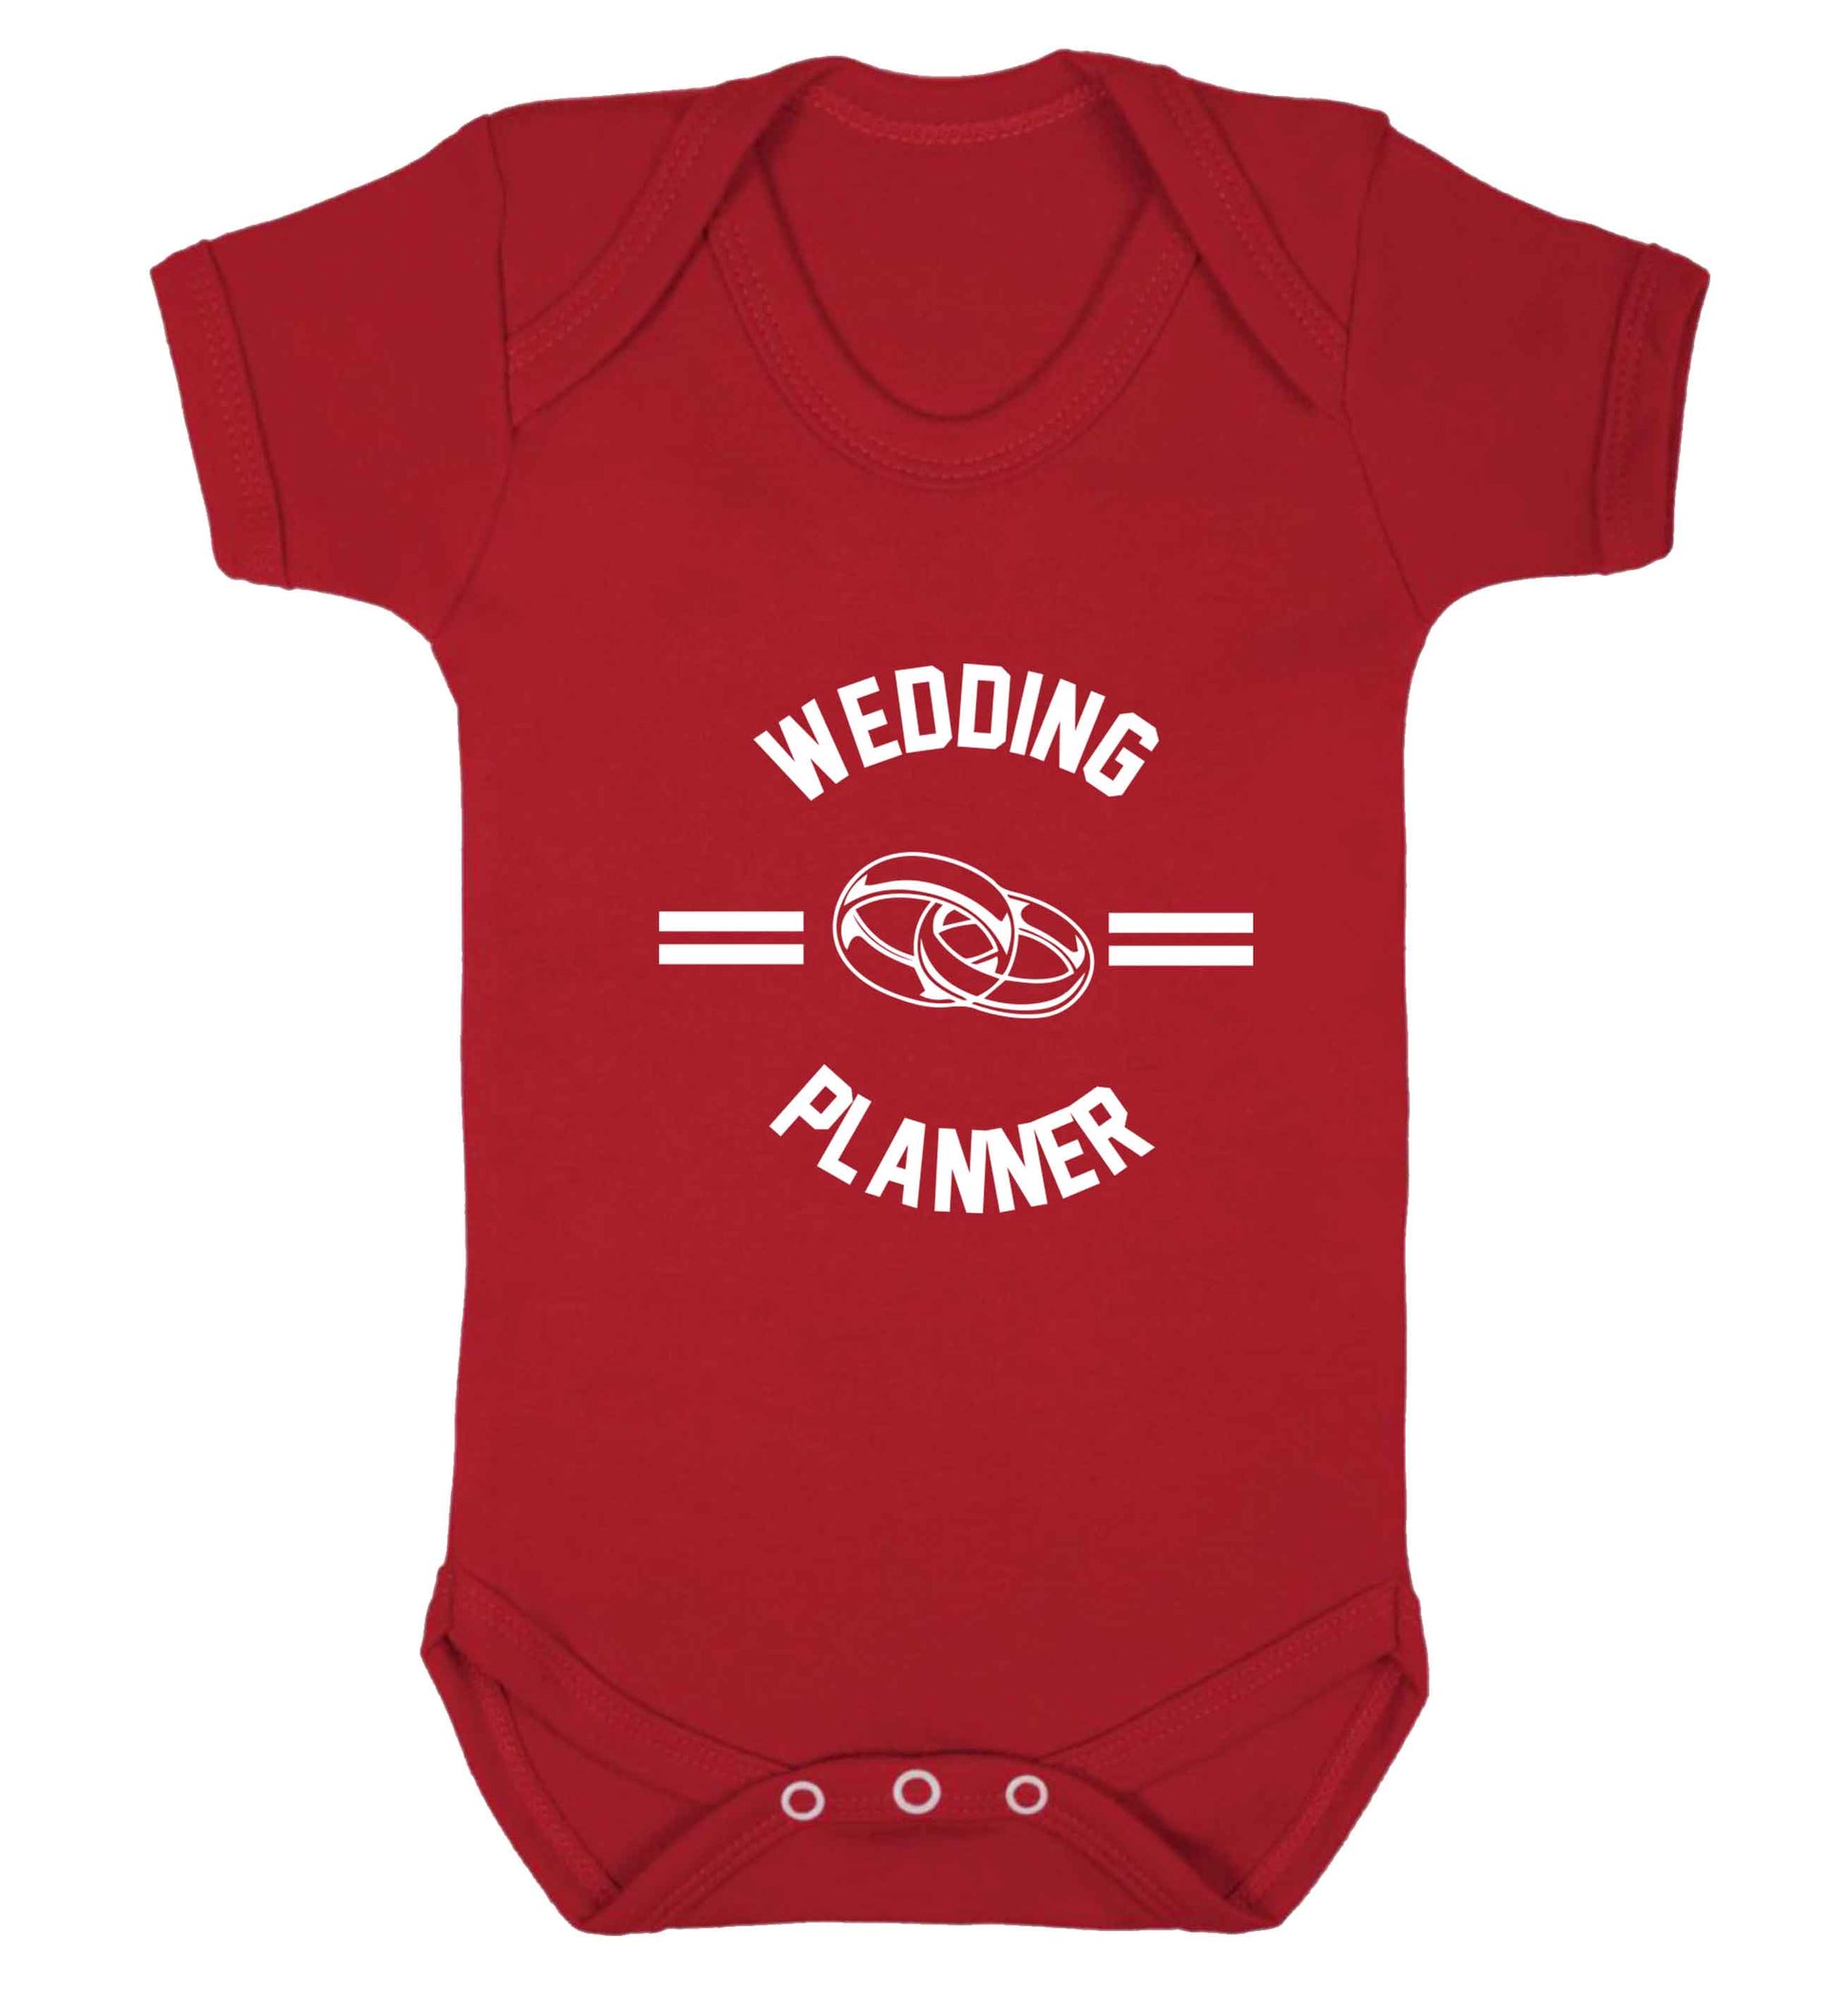 Wedding planner baby vest red 18-24 months